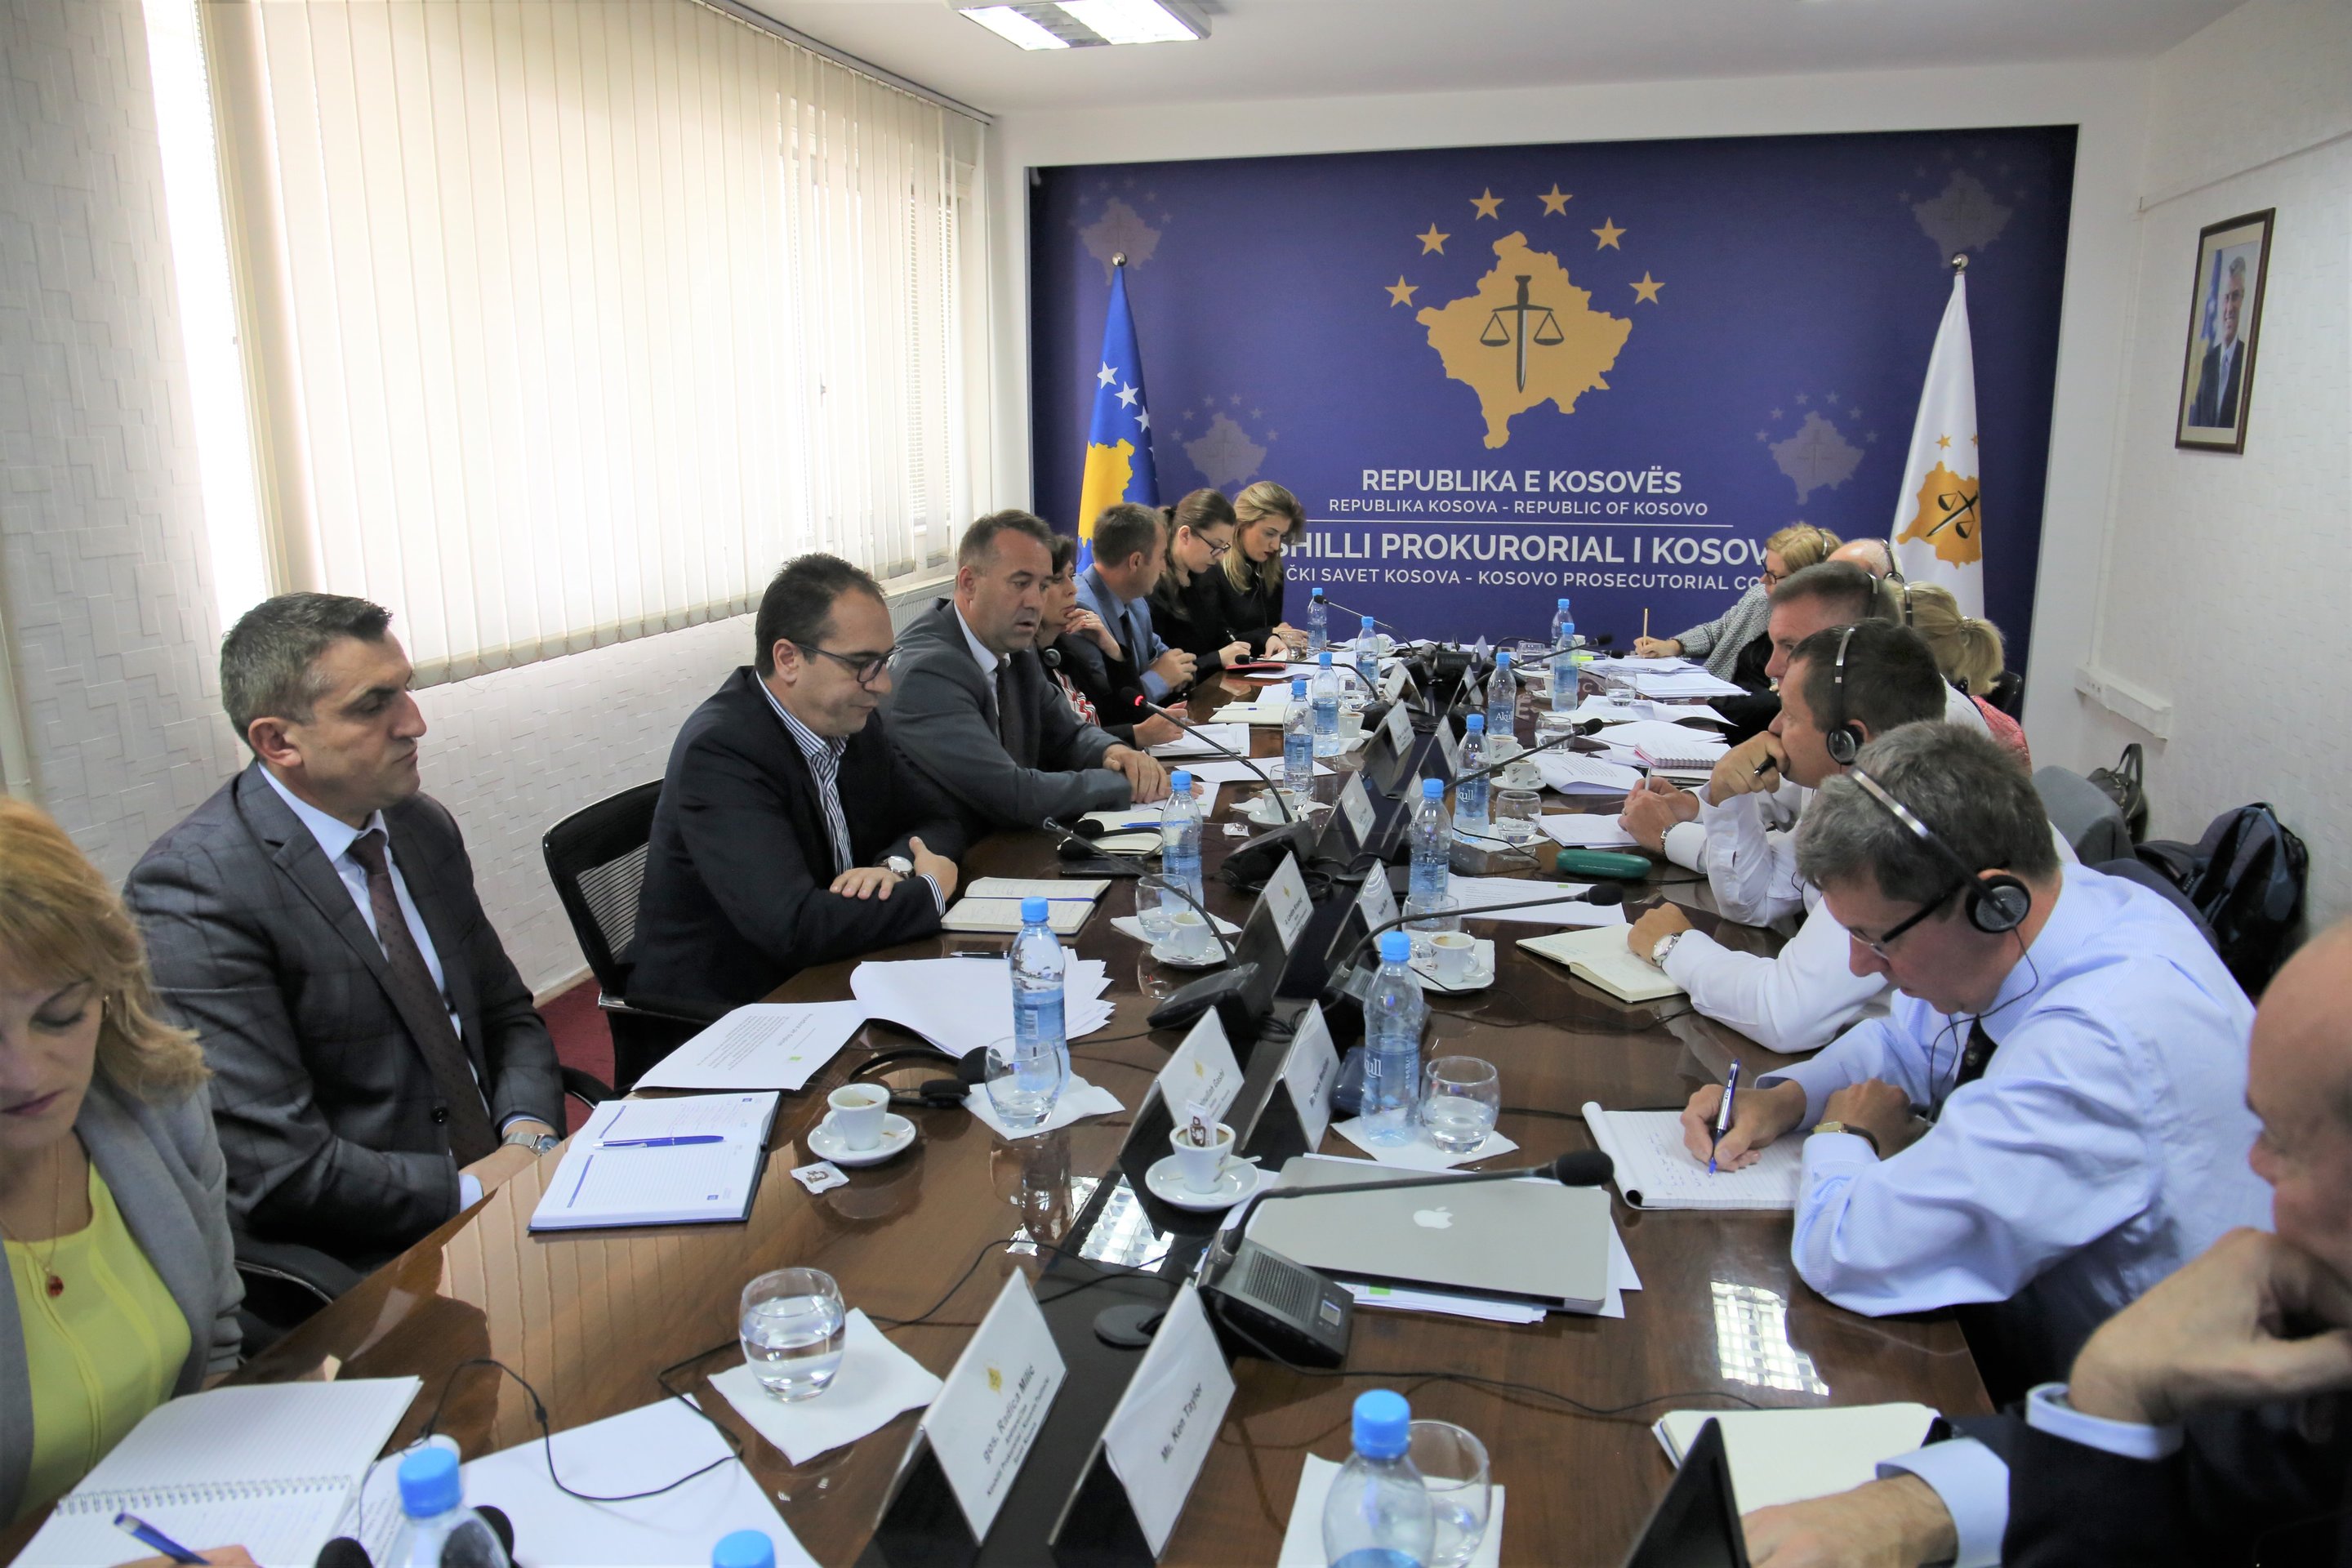 Projekti britanik “Forcimi i sistemit të drejtësisë në Kosovë” prezanton rekomandimet për avancimin e sistemit prokurorial